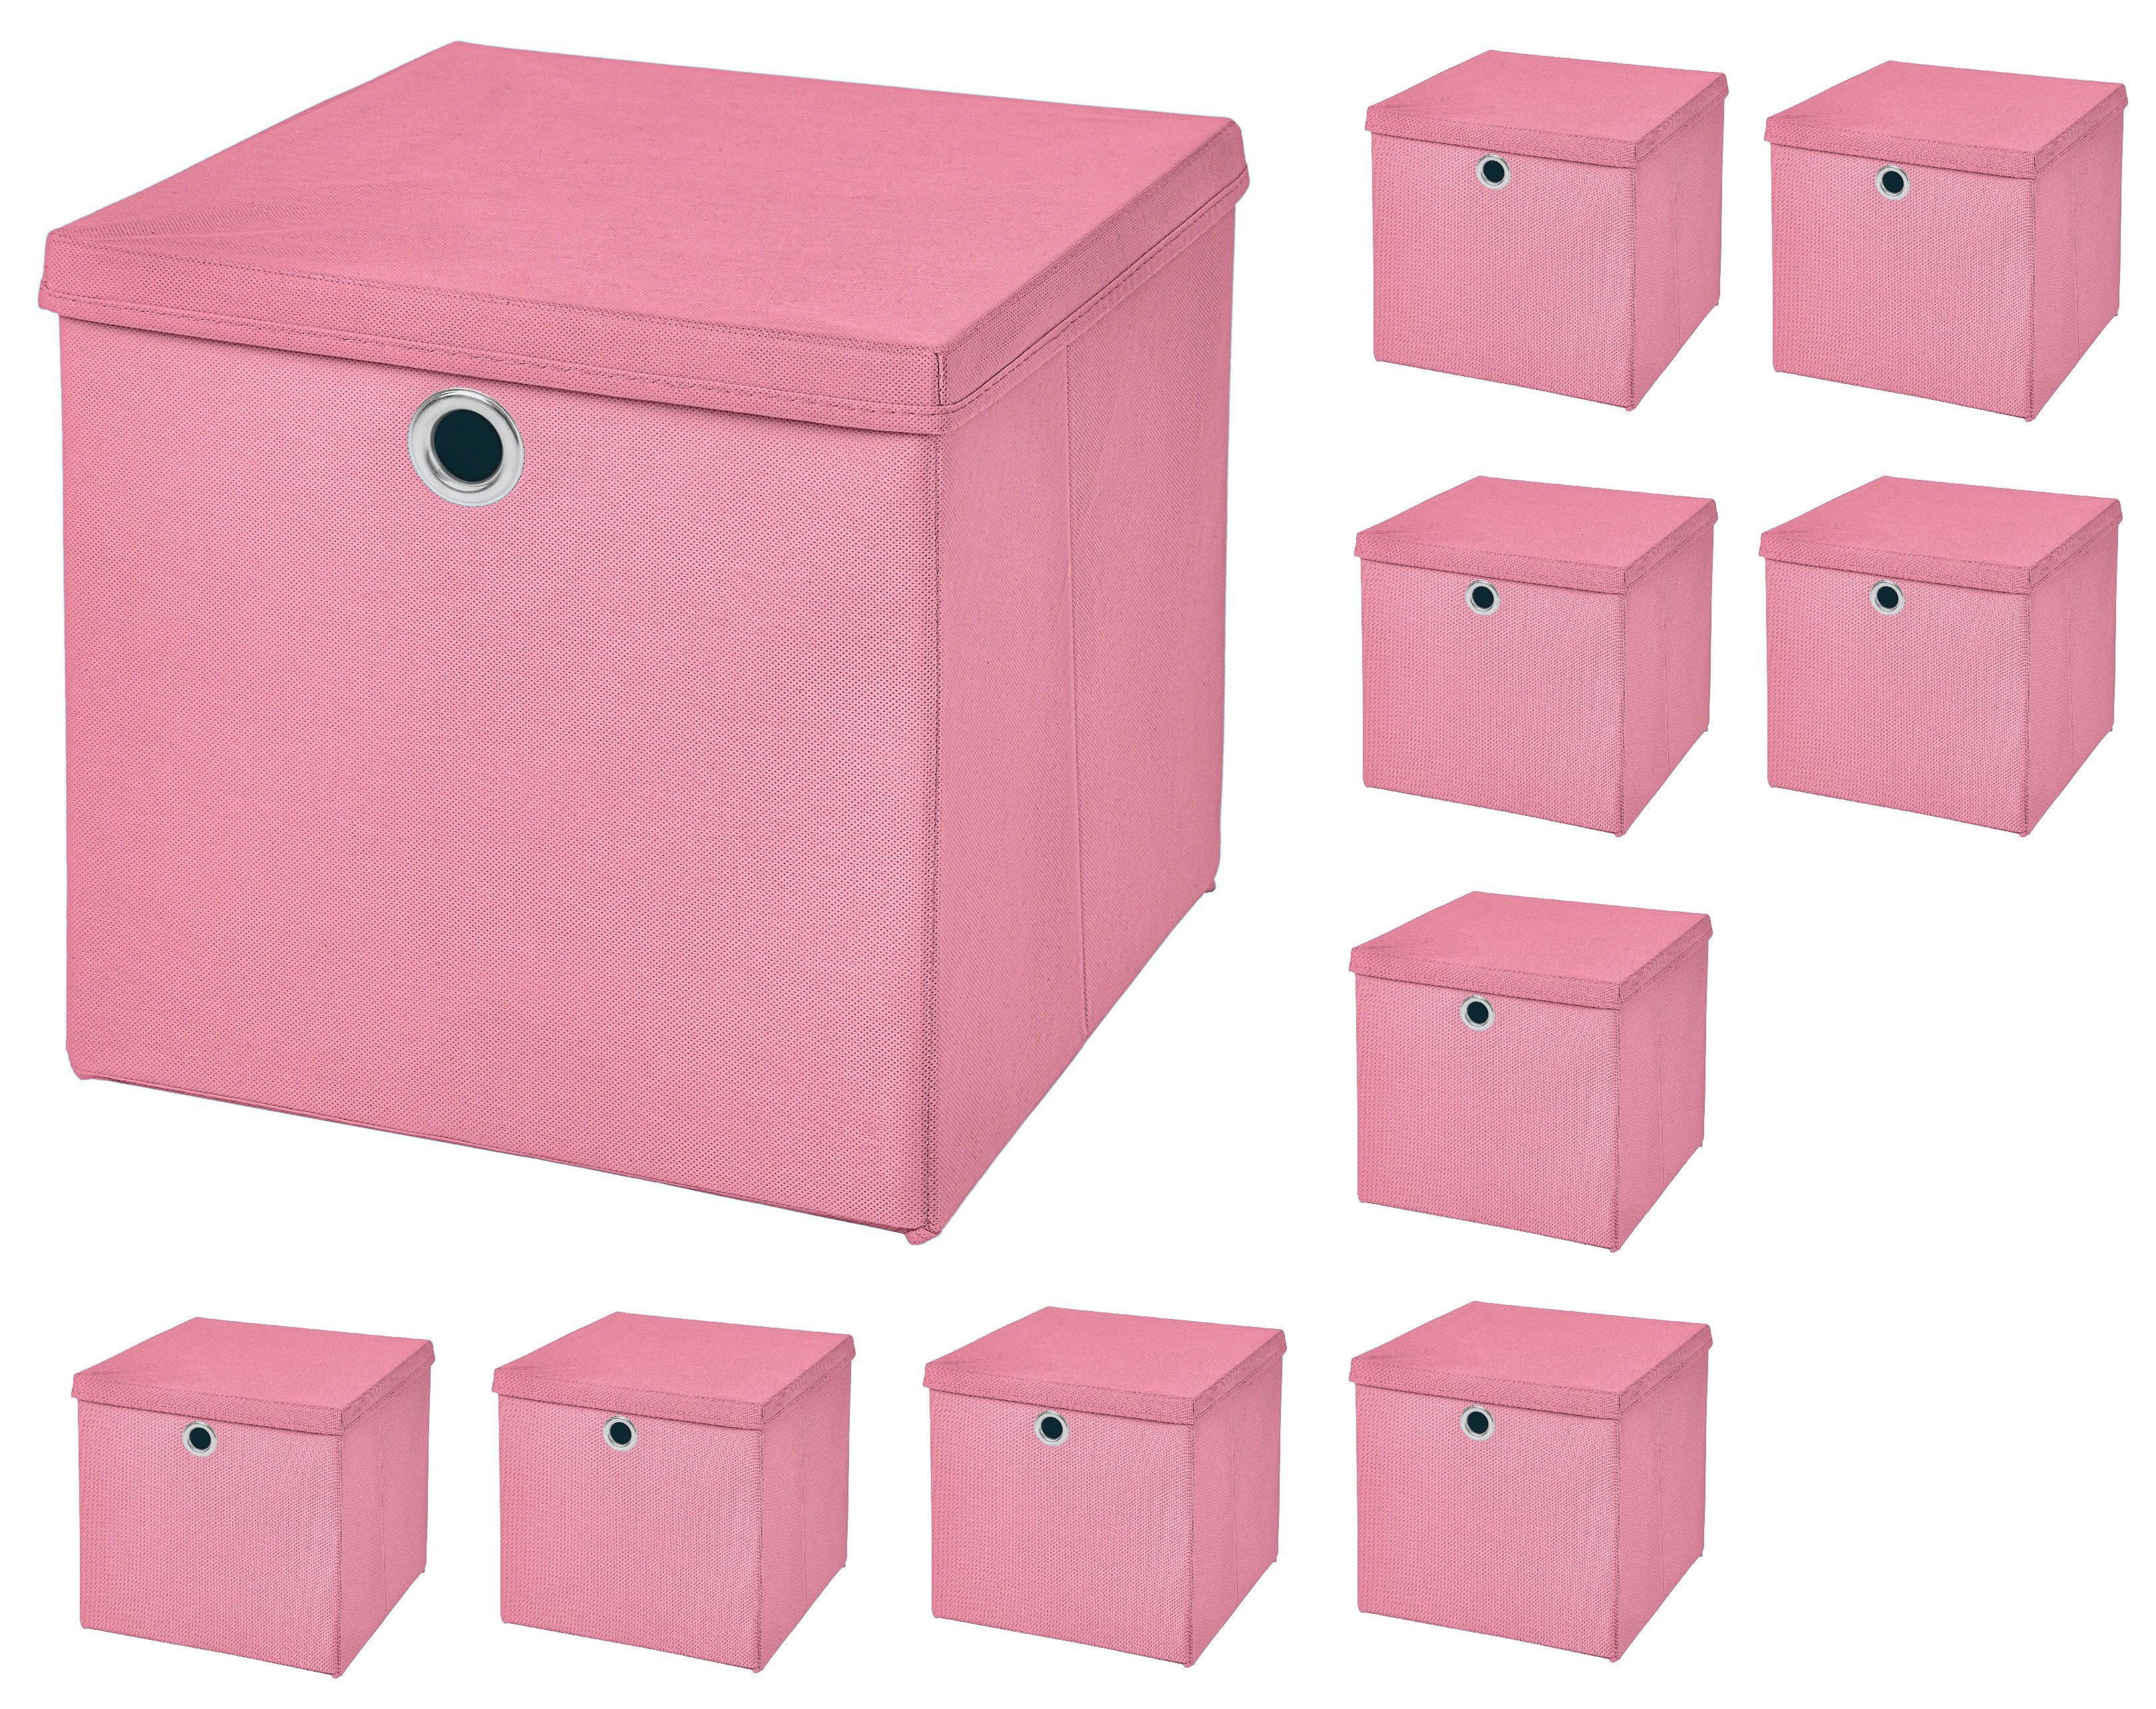 Aufbewahrungsboxen mit Deckeln 10 Stk. 28x28x28 cm Lila –